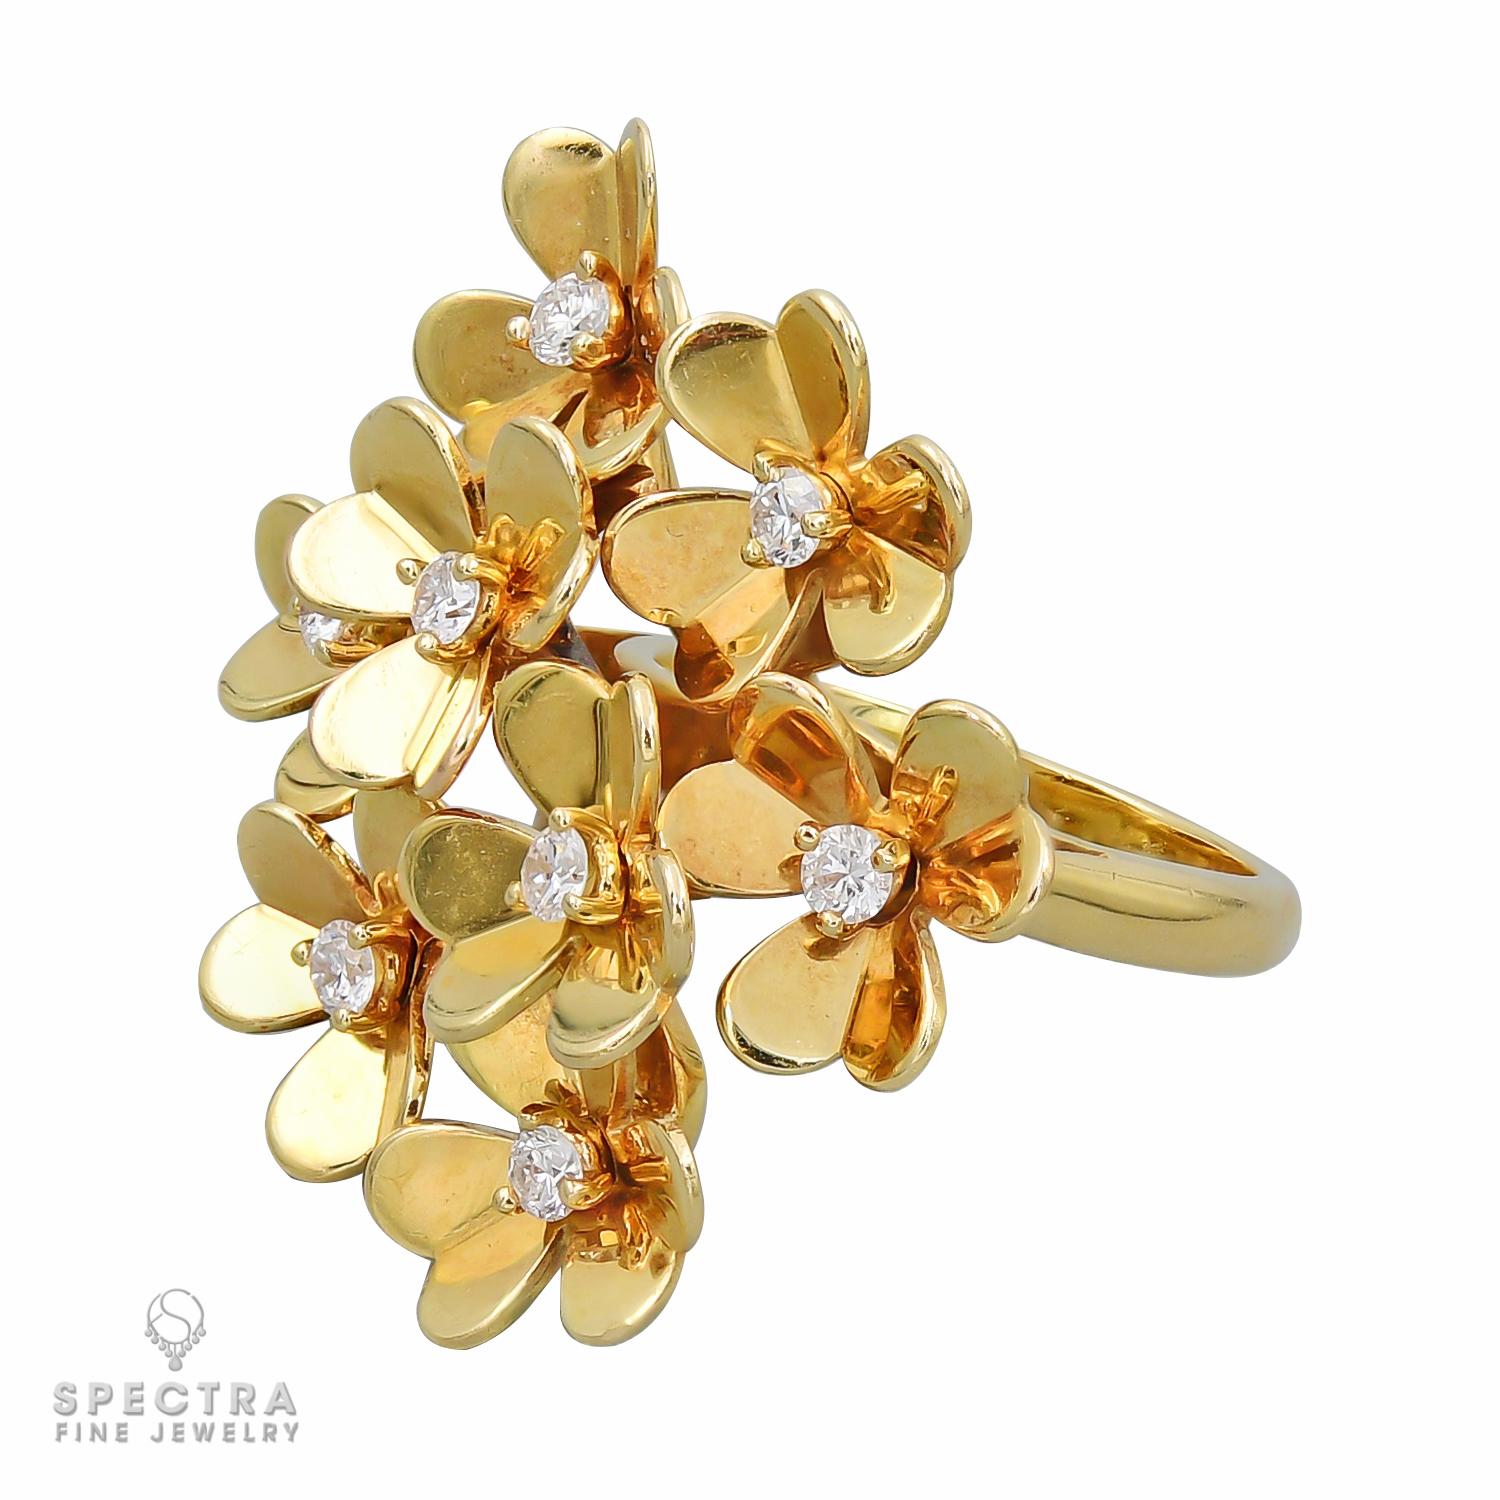 Bague Frivole composée de 8 fleurs, serties de diamants ronds de couleur DEF, pureté IF à VVS.
Le métal est de l'or jaune 18k, poids 11,95 grammes.
Signé VCA 750, avec le numéro de série.
Taille 51 (US 5.5)
Prix de vente : 9 900 dollars hors